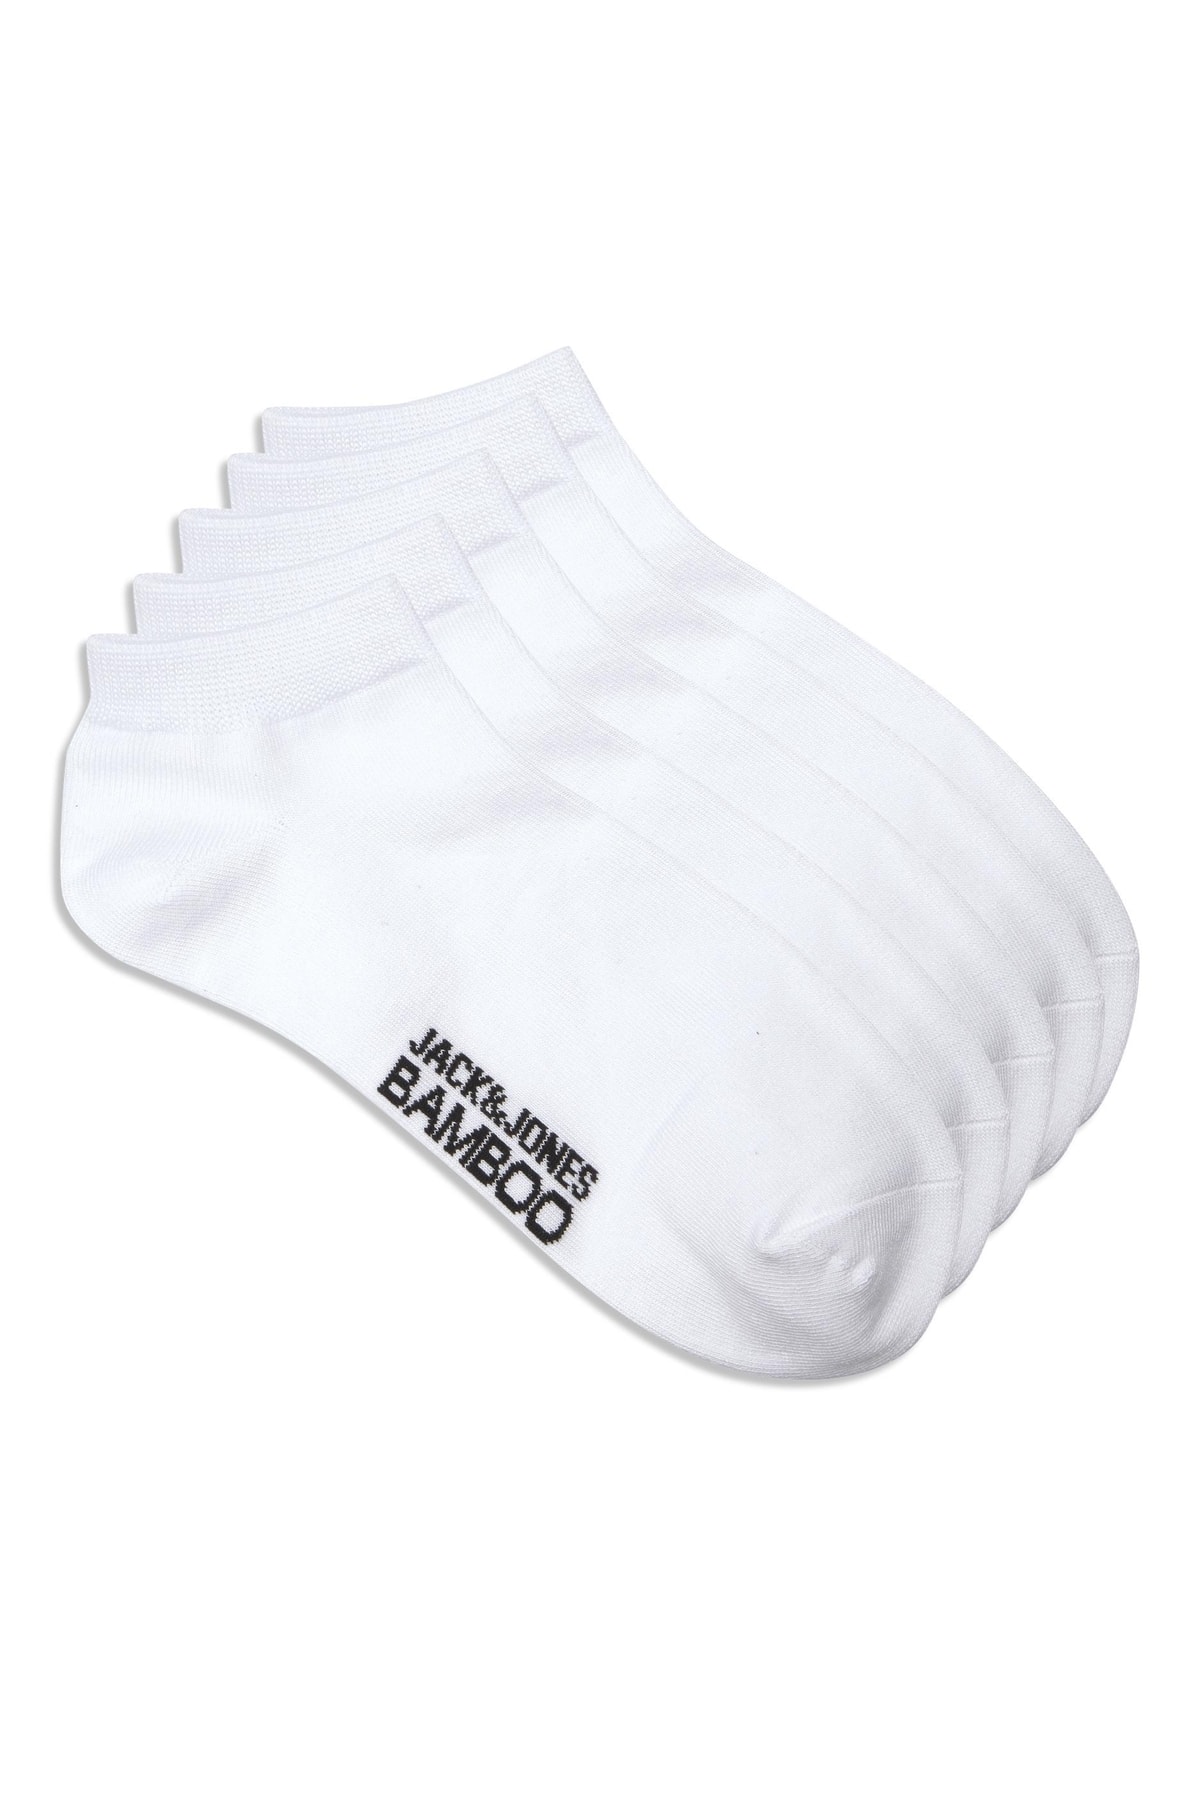 Jack & Jones Jack Jones Basic Bamboo Short Sock 5 Pack Erkek Beyaz Çorap 12206139-01